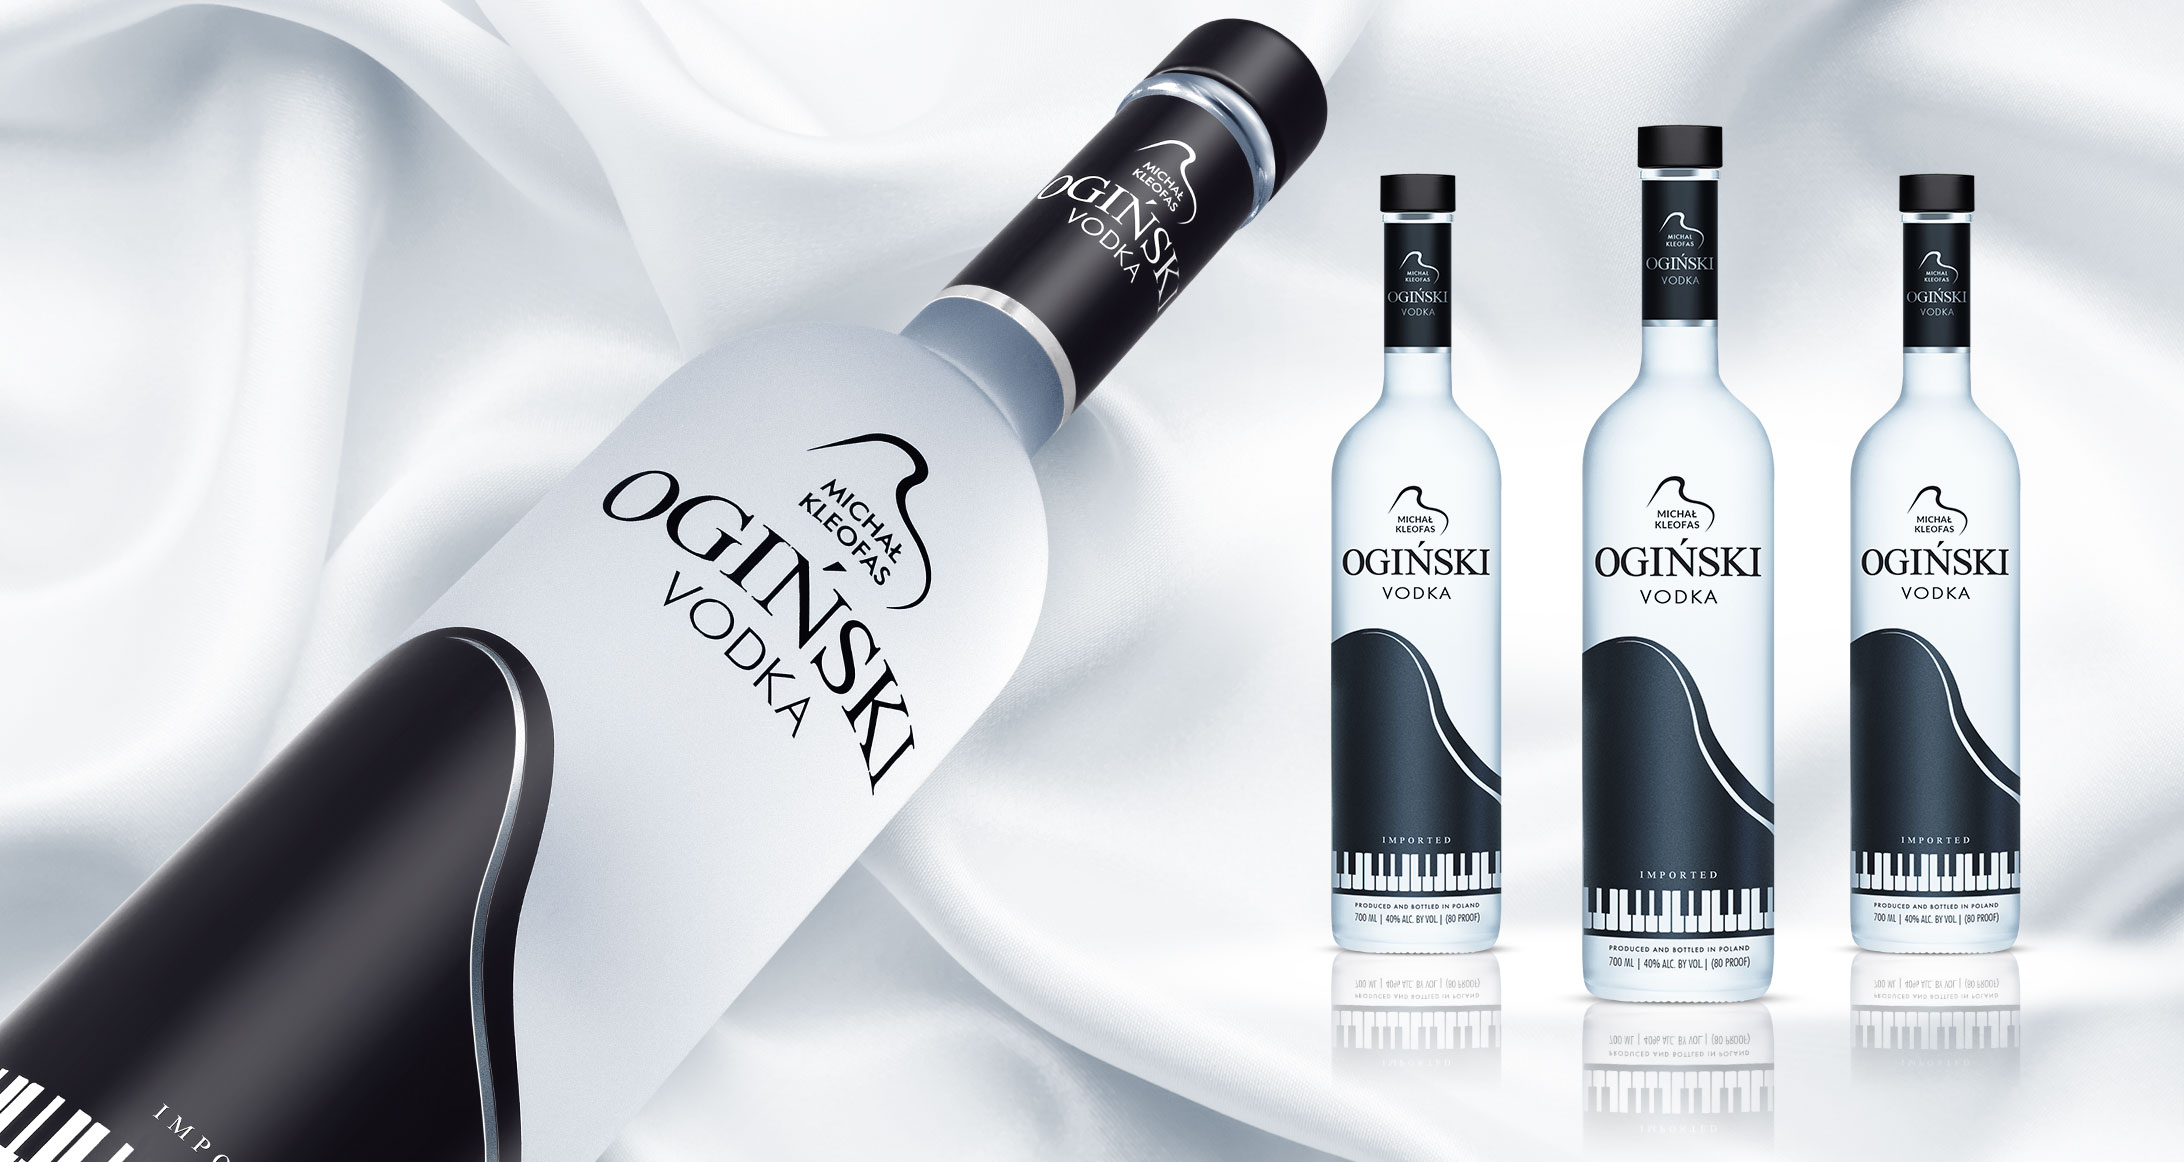 ogiński vodka new packaging design